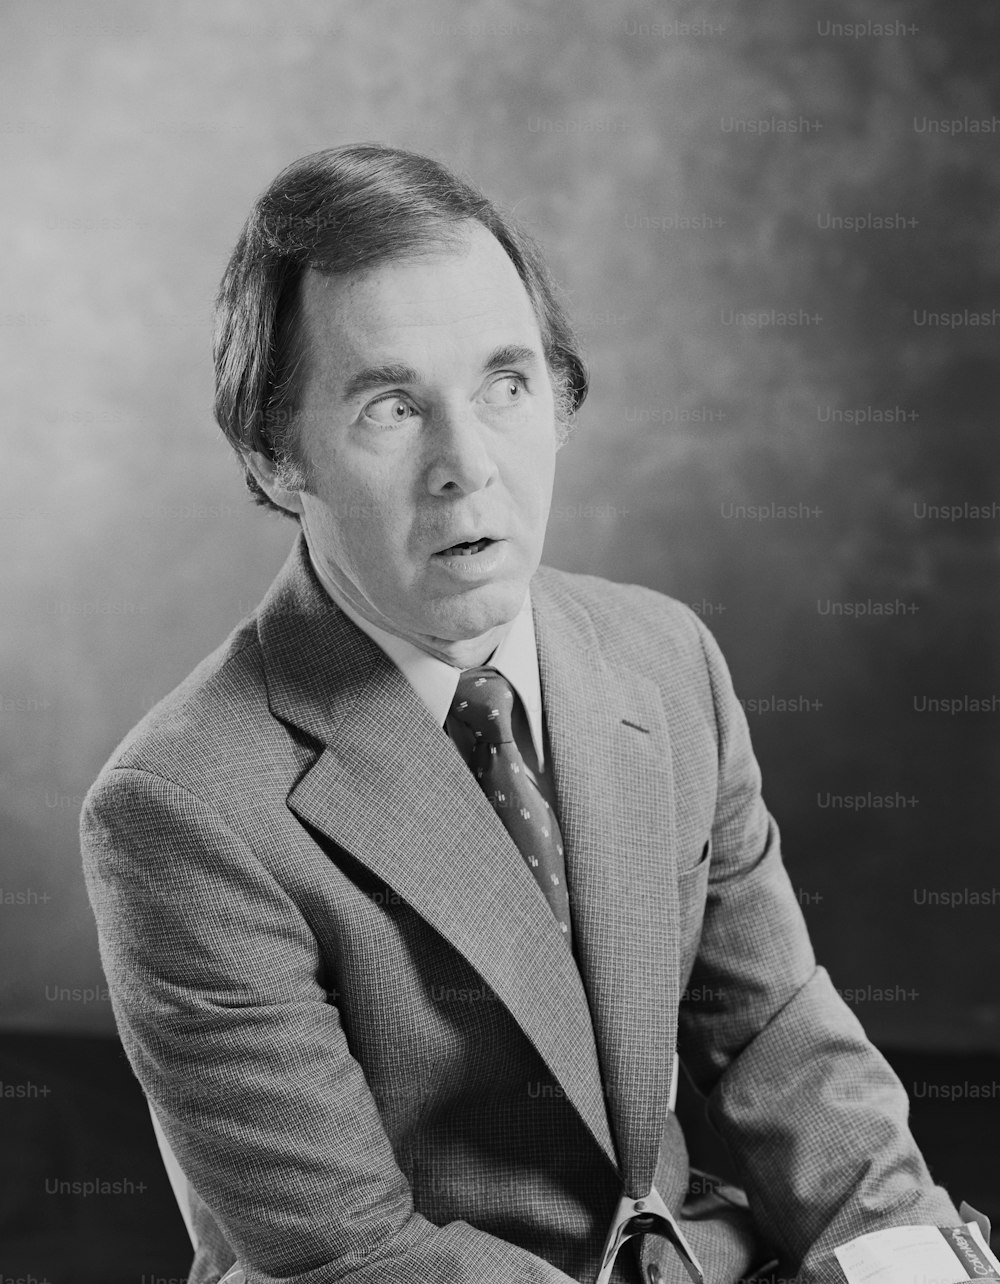 uma foto em preto e branco de um homem em um terno